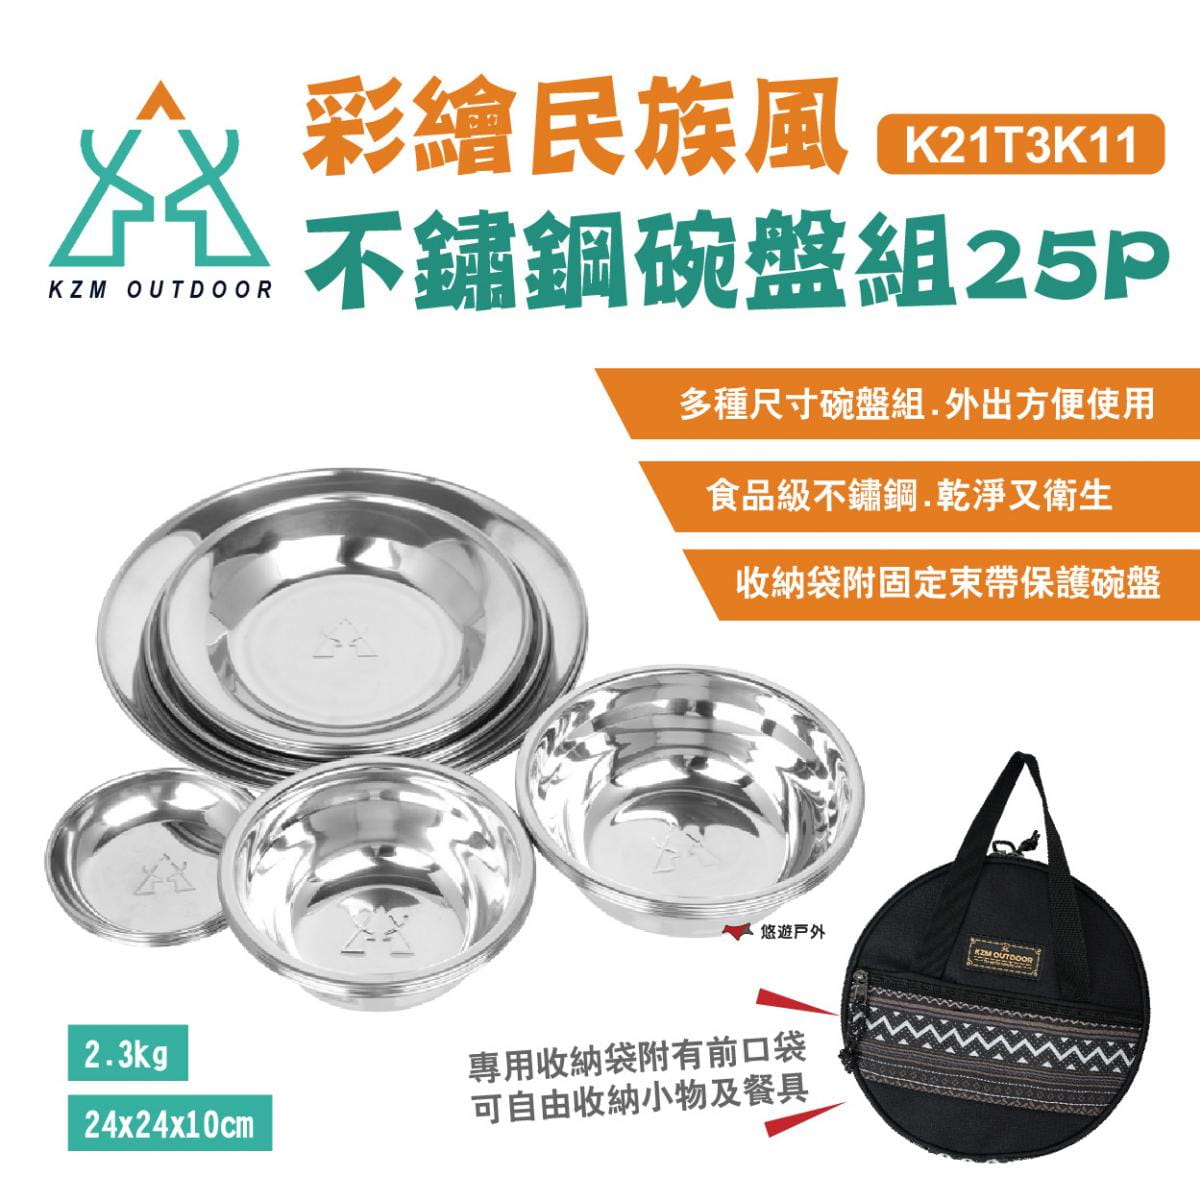 【KZM】彩繪民族風不鏽鋼碗盤組25P_K21T3K11 (悠遊戶外) 0